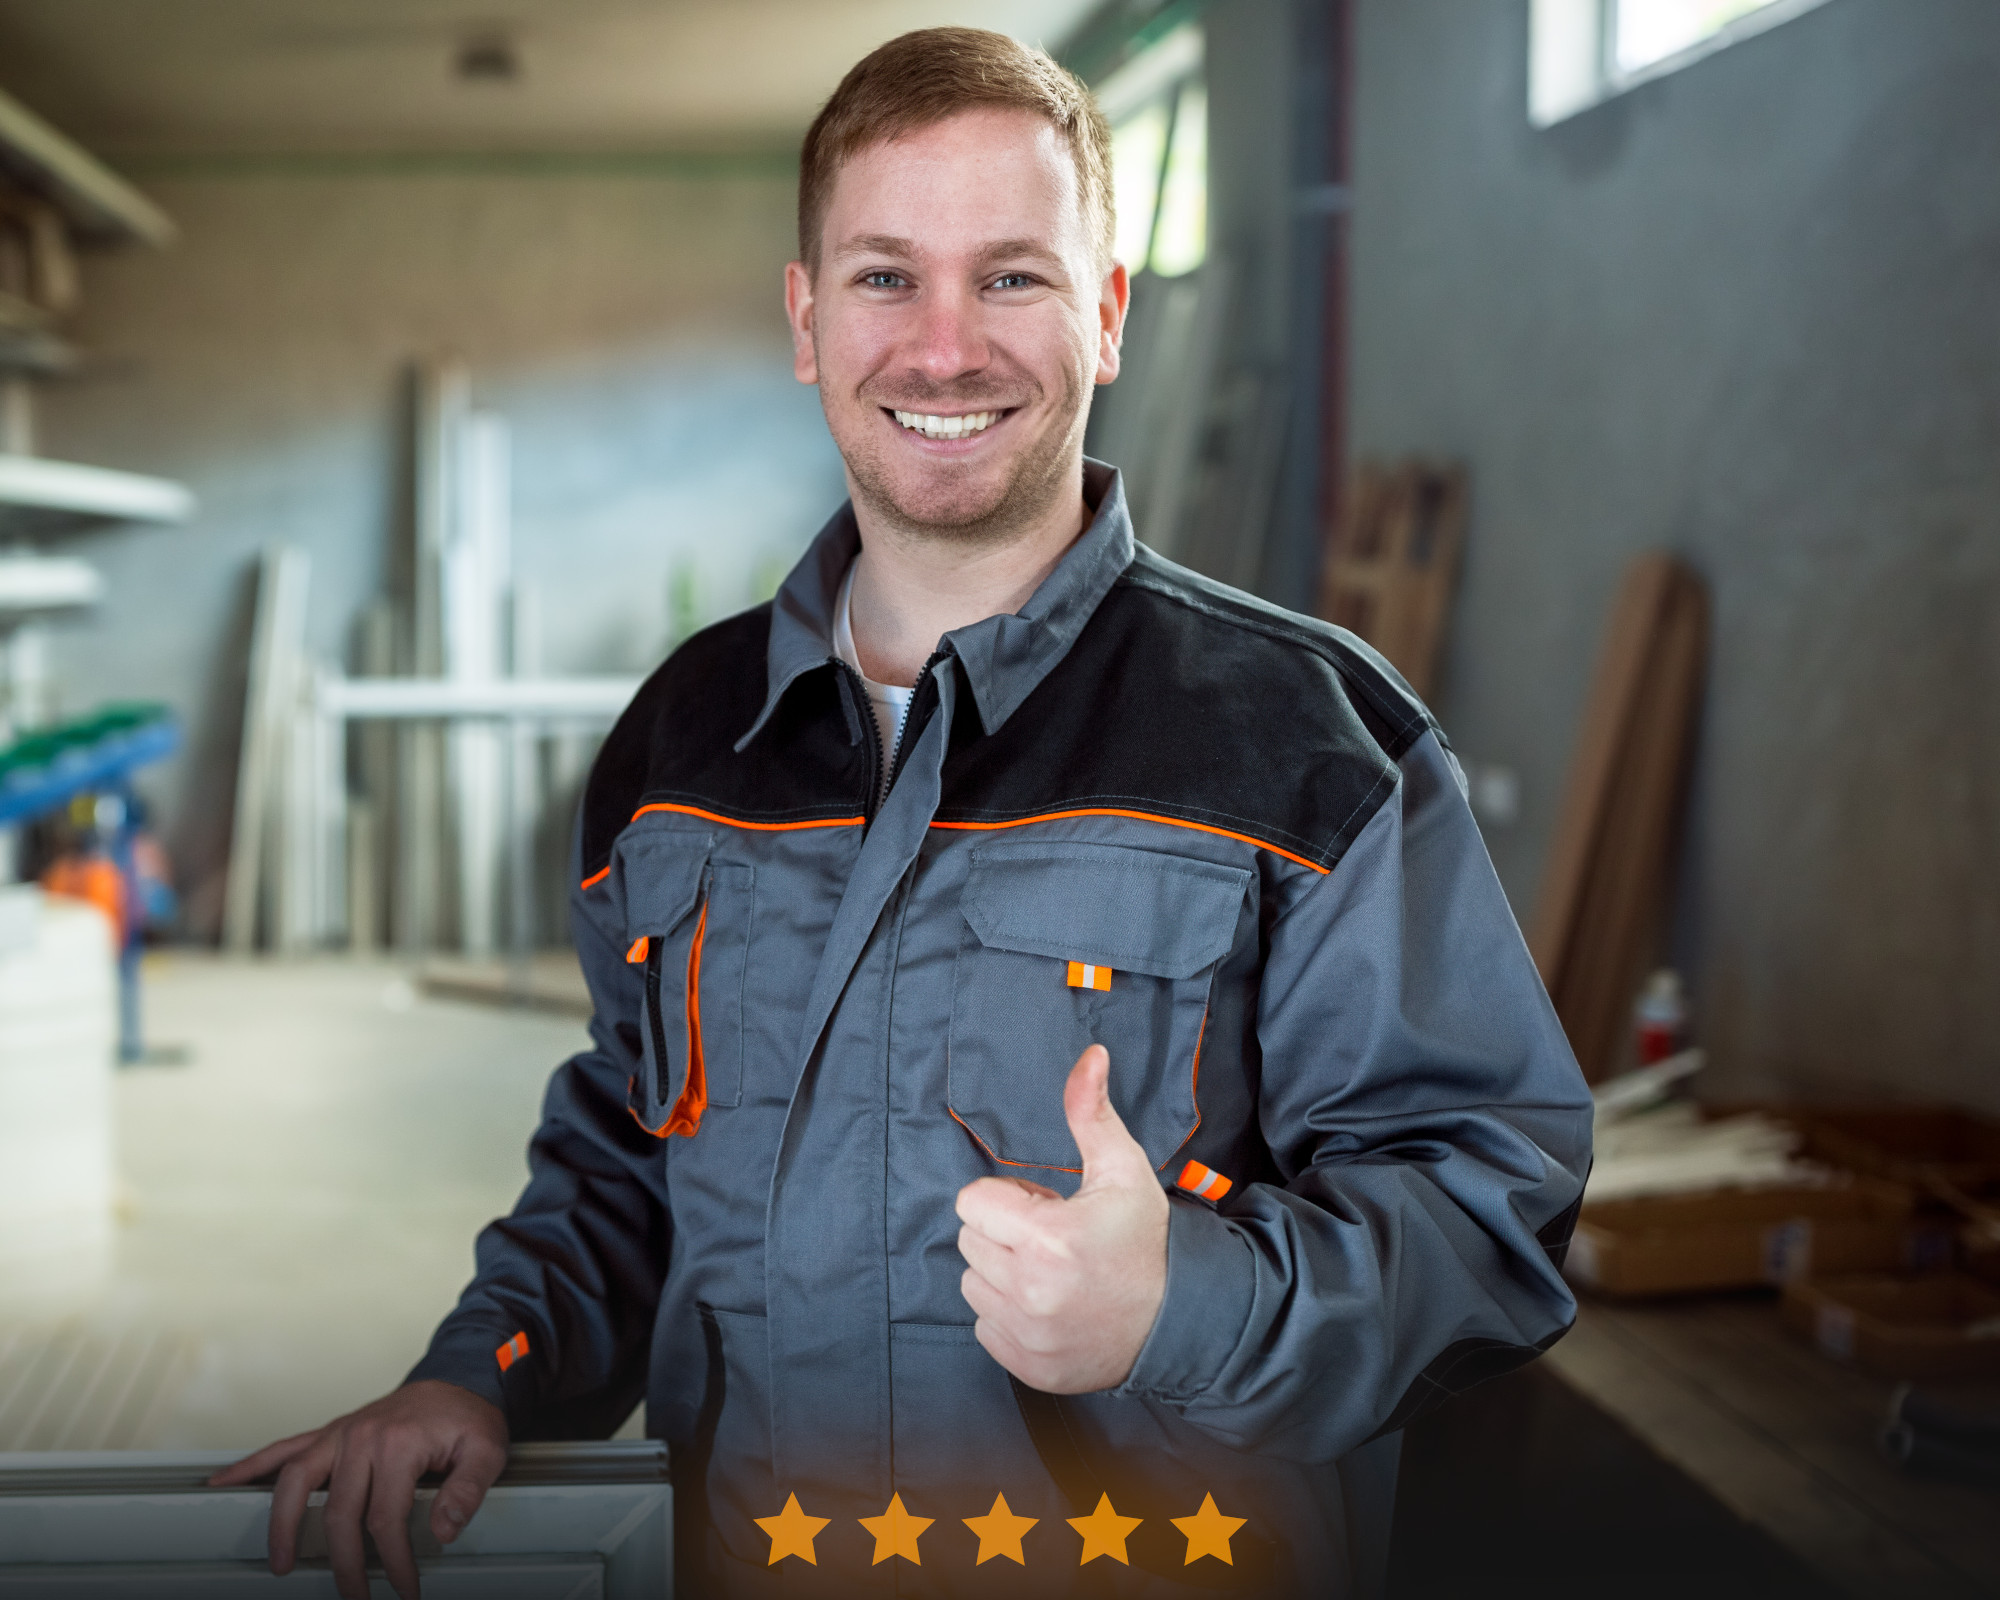 Ouvrier en uniforme souriant avec un pouce levé et cinq étoiles de satisfaction client.